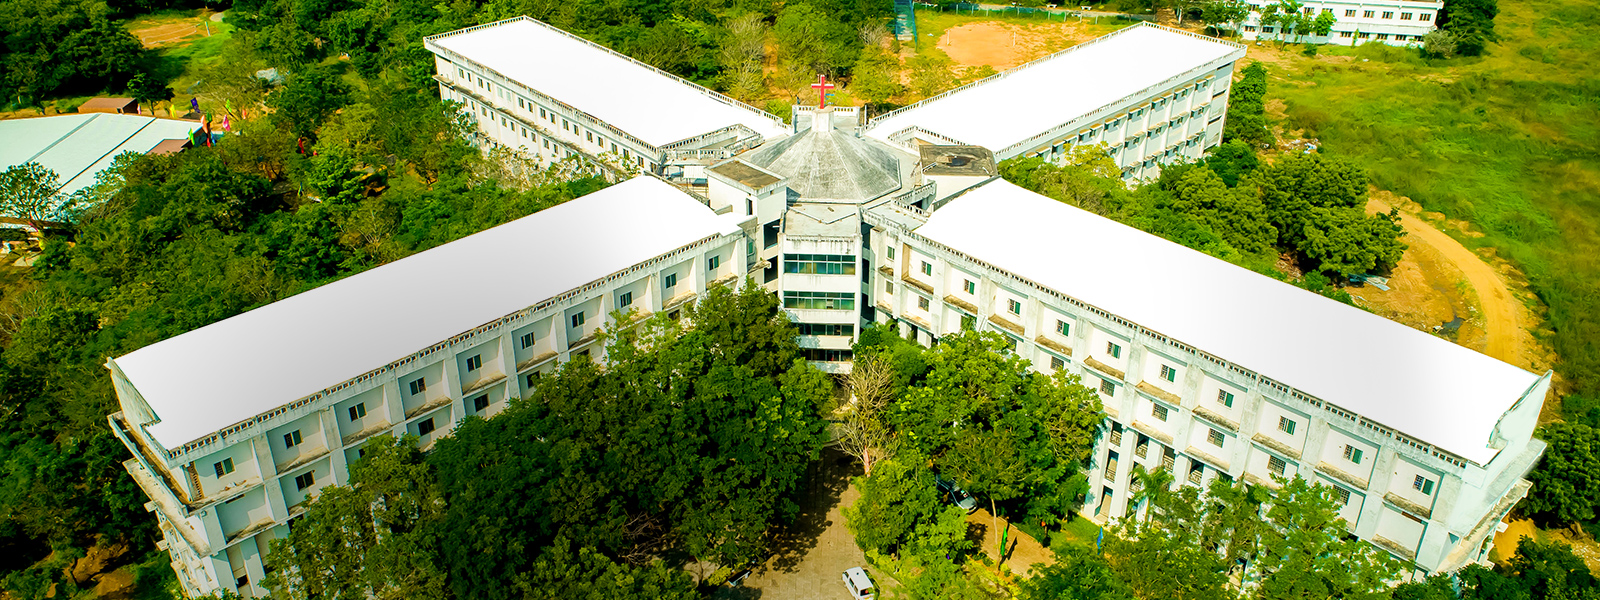 Kings Engineering College, Sriperumbudur Image